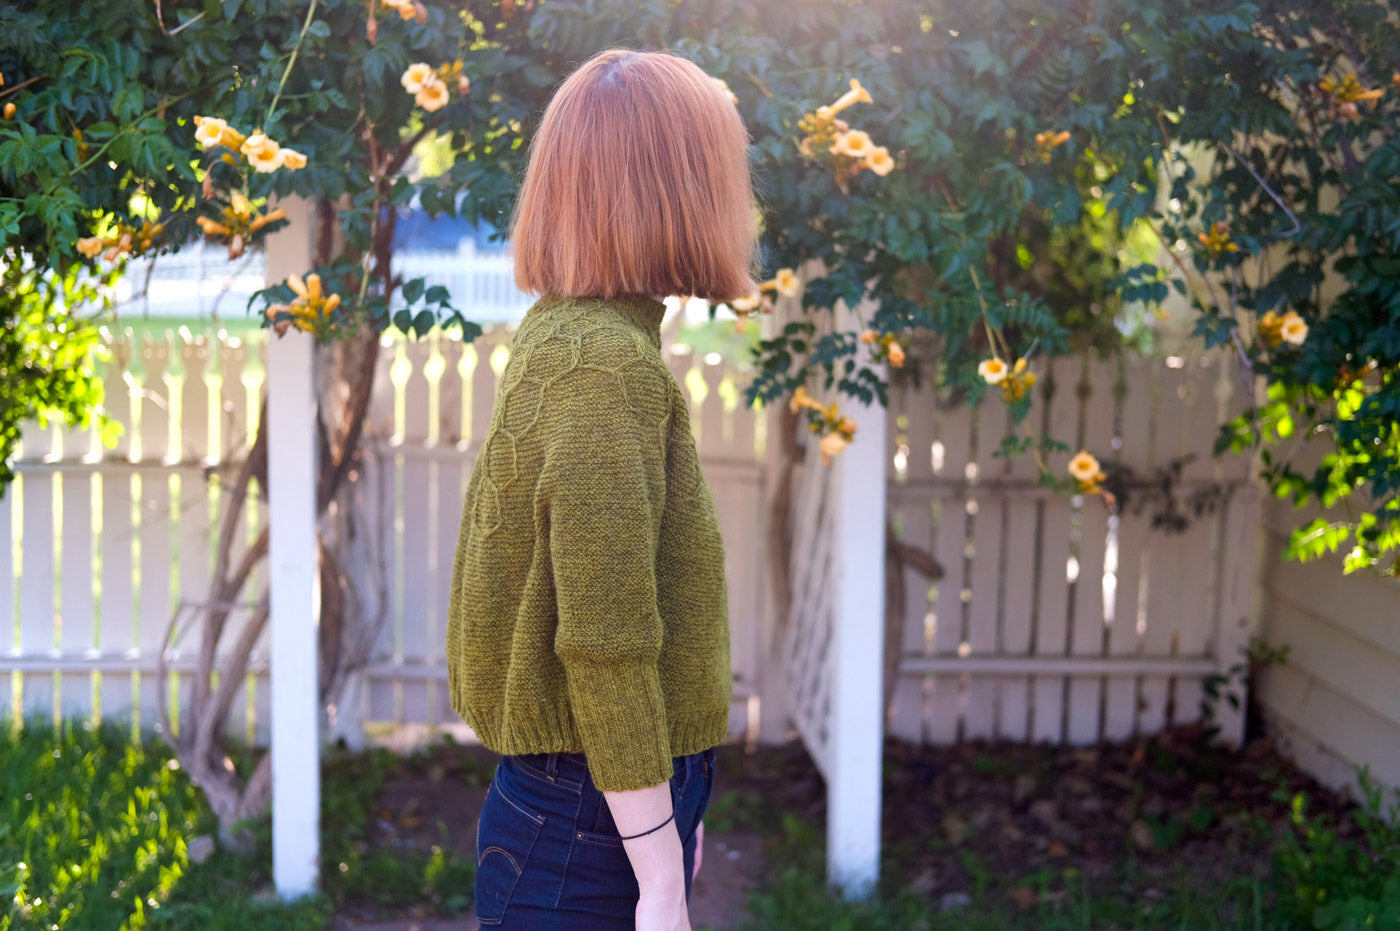 Lauren in her garden wearing her Wool and Honey Sweater